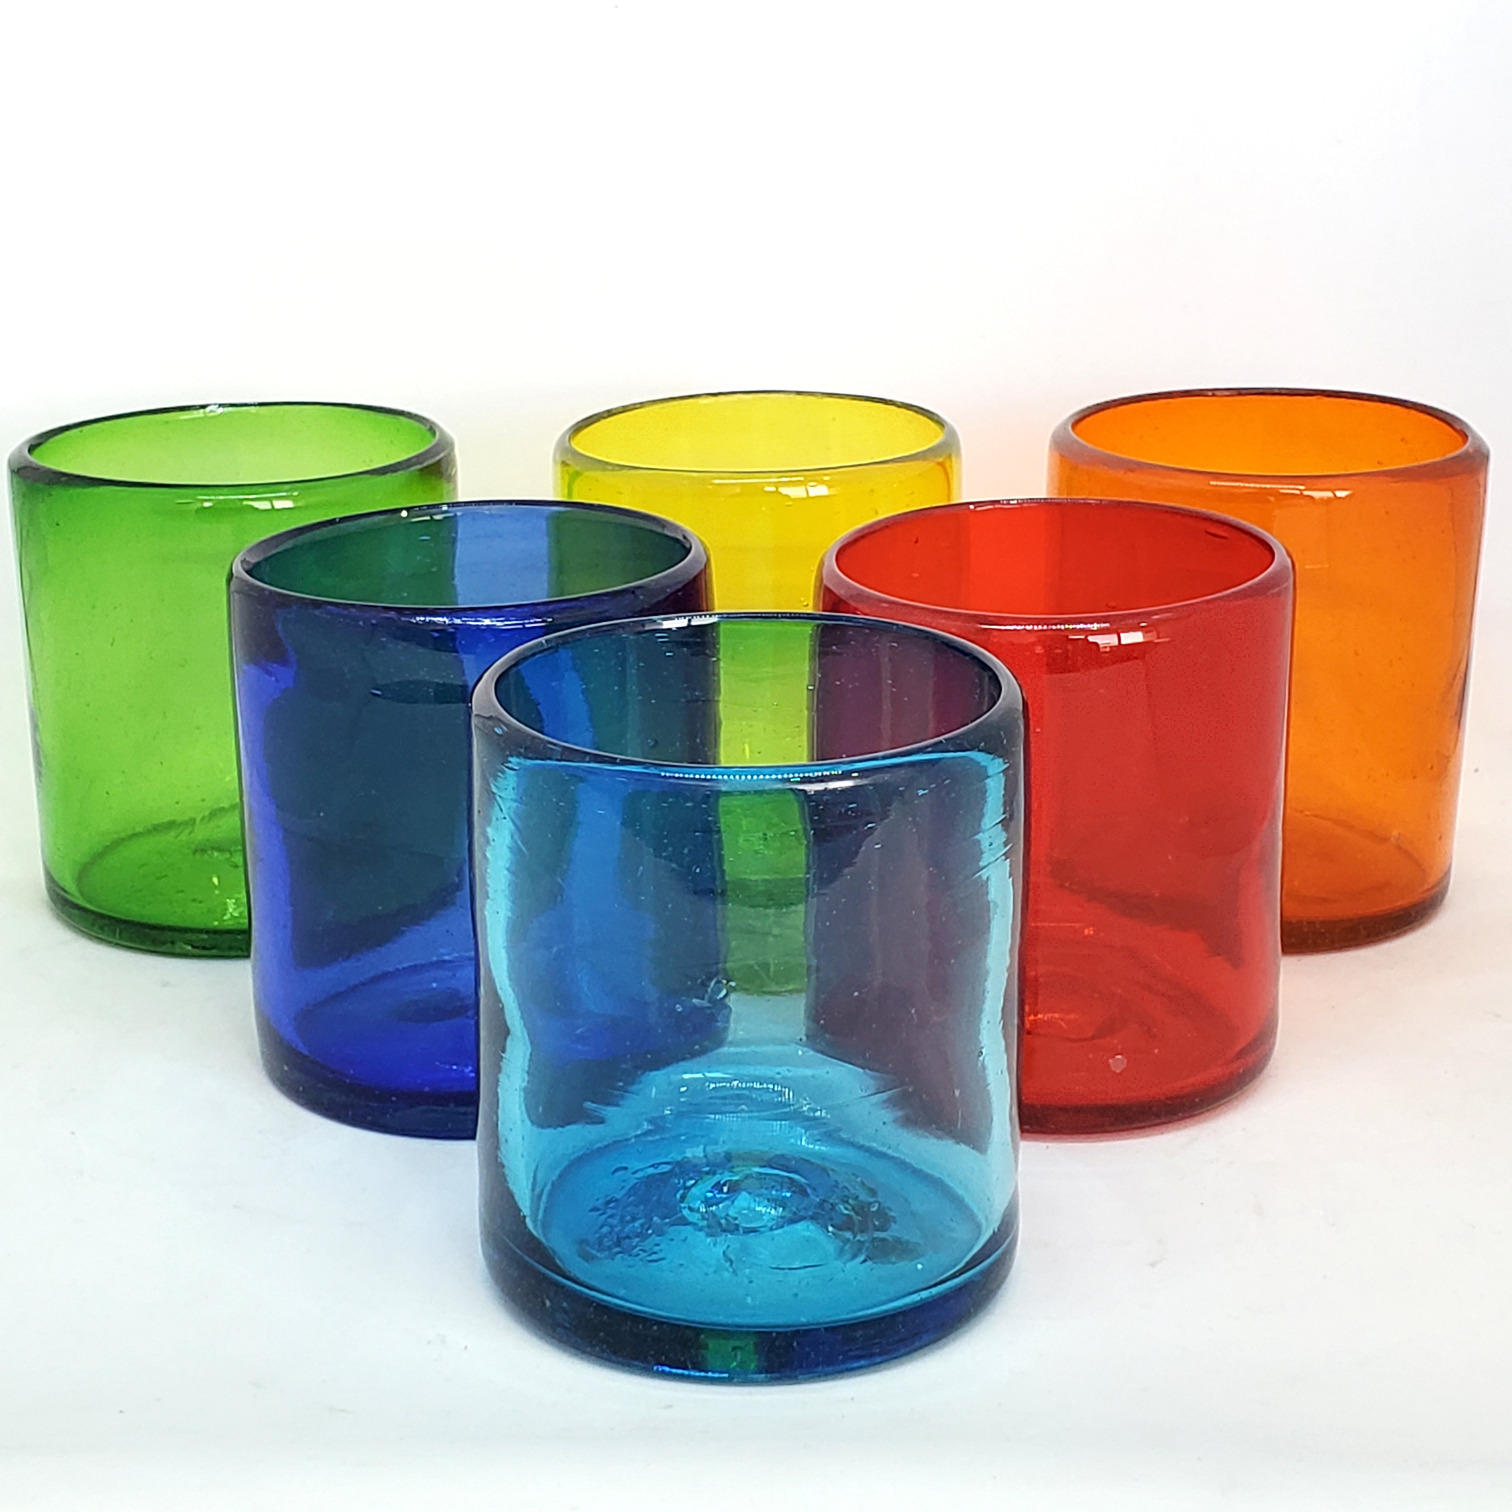 Colores Solidos / Vasos chicos 9 oz Arcoiris (set de 6) / Éstos artesanales vasos le darán un toque colorido a su bebida favorita.